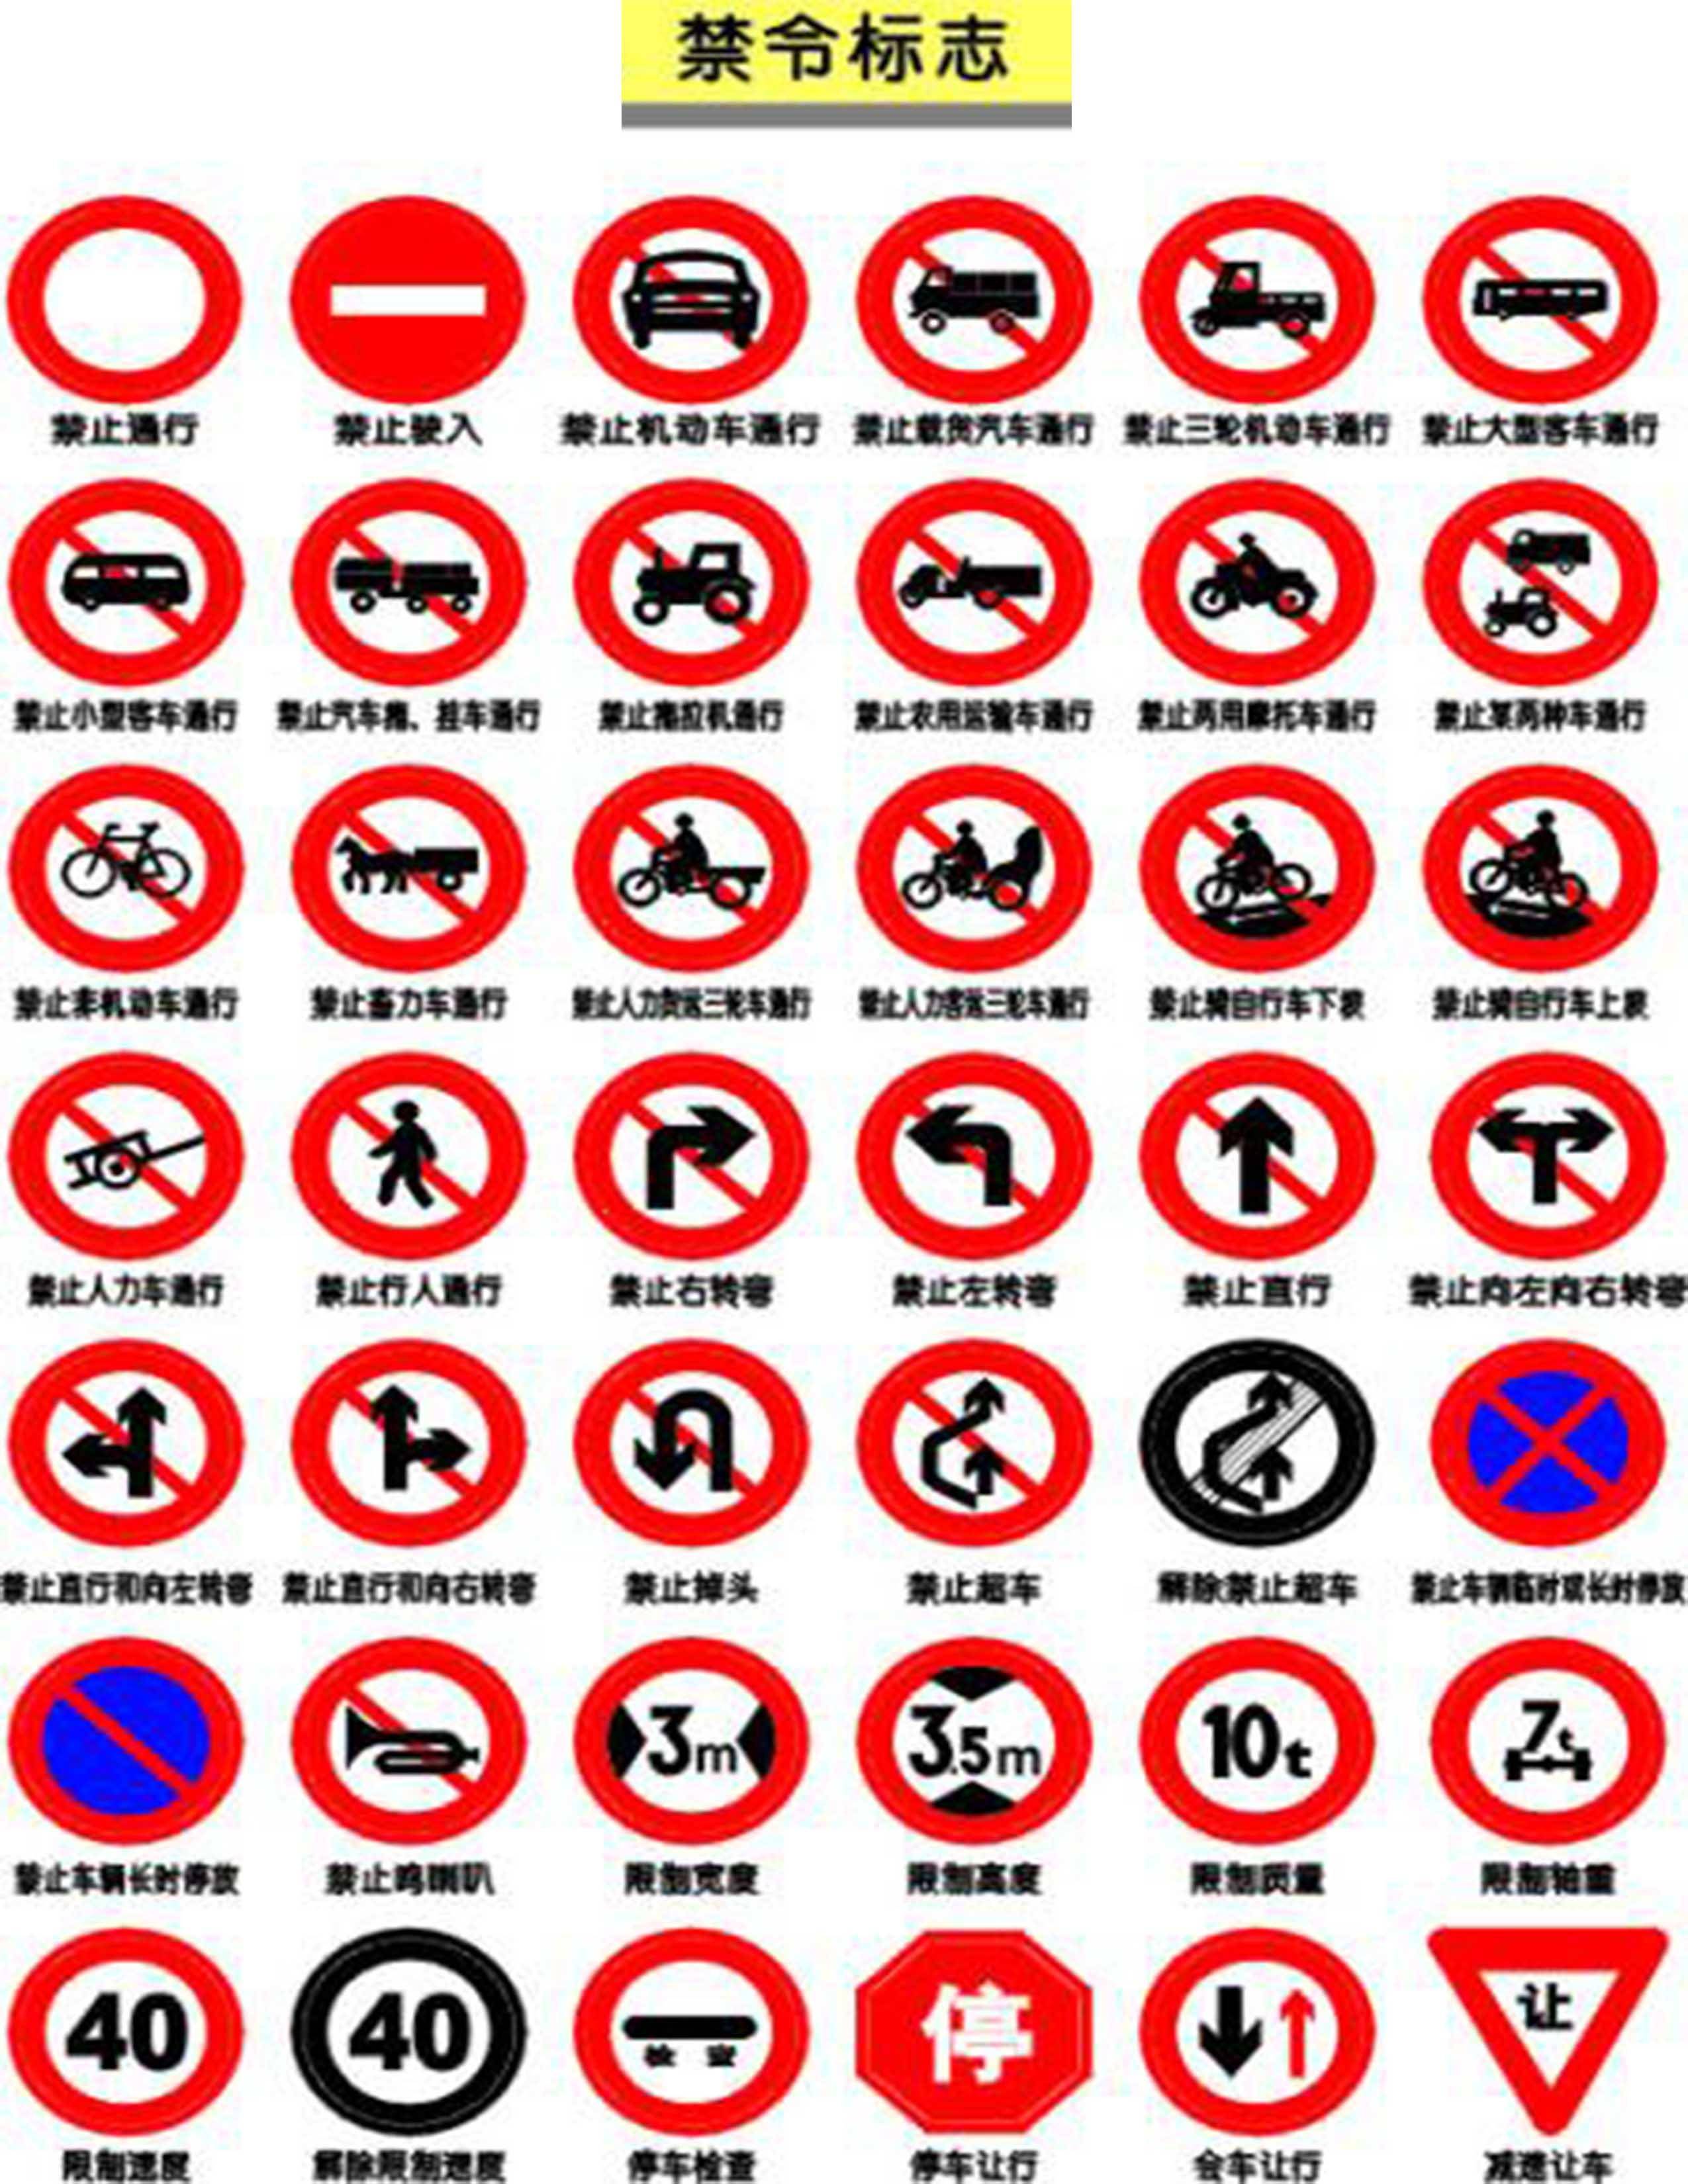 交通违法曝光台第004期:请自觉遵守禁令标志